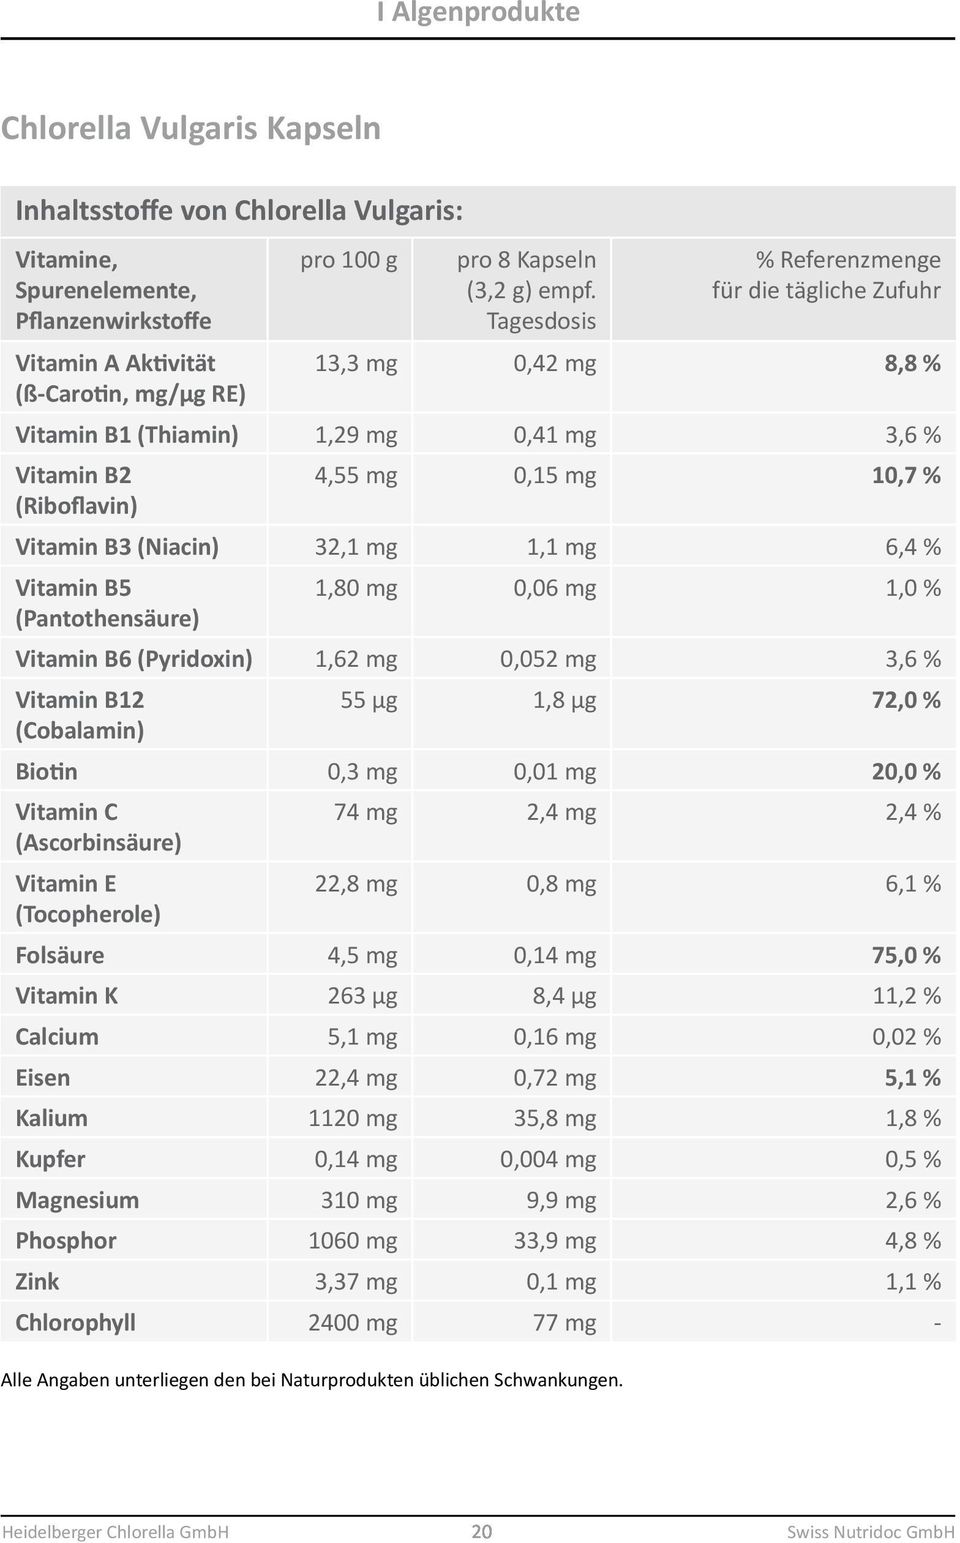 1,1 mg 6,4 % Vitamin B5 (Pantothensäure) 1,80 mg 0,06 mg 1,0 % Vitamin B6 (Pyridoxin) 1,62 mg 0,052 mg 3,6 % Vitamin B12 (Cobalamin) 55 µg 1,8 µg 72,0 % Biotin 0,3 mg 0,01 mg 20,0 % Vitamin C